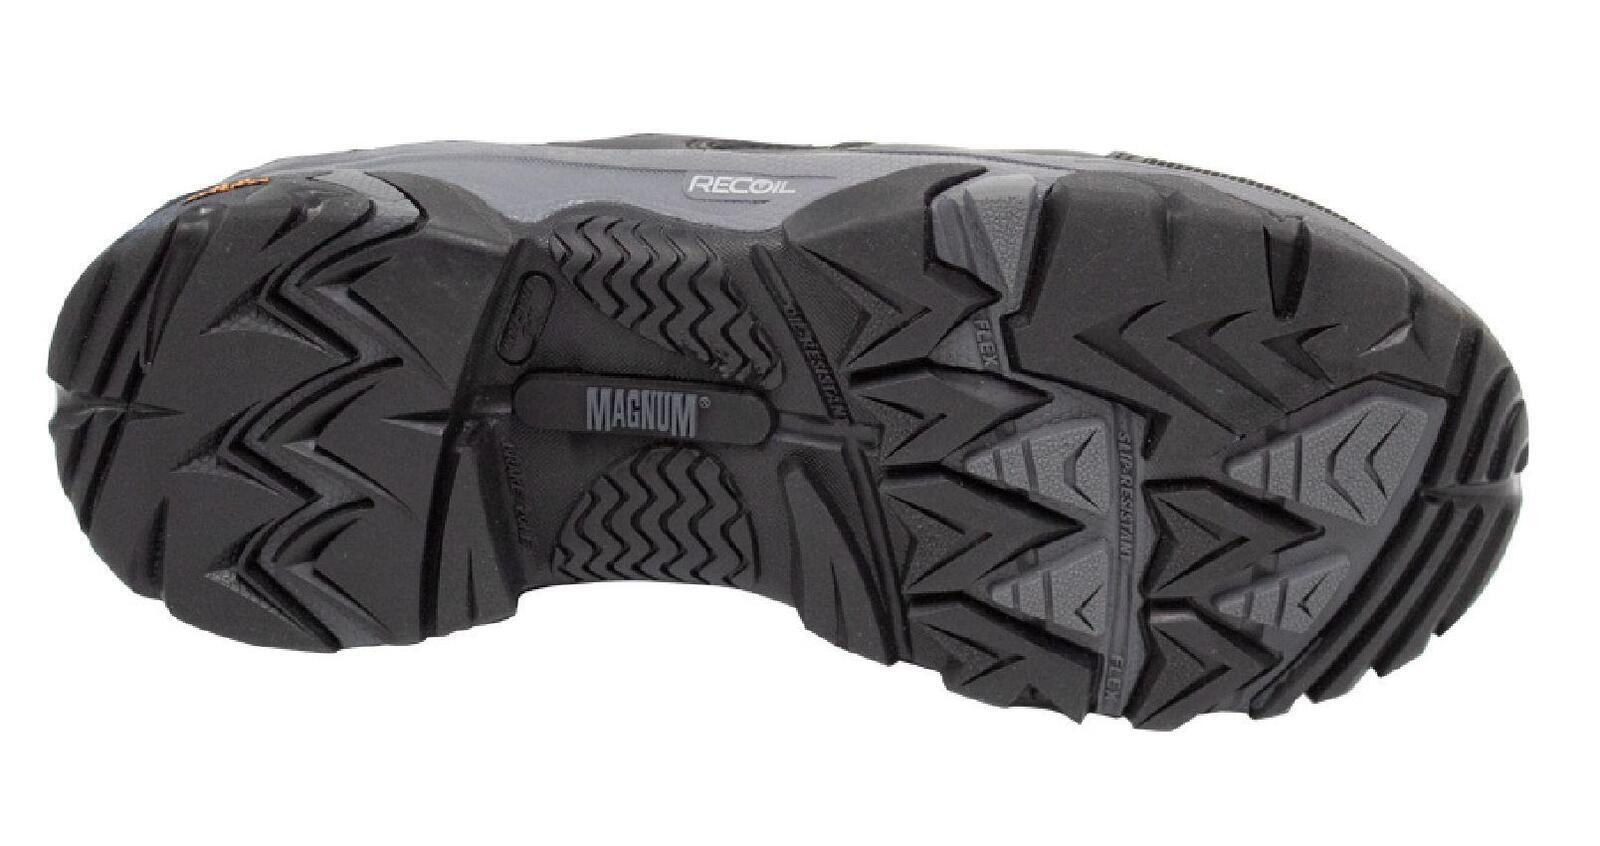 Magnum X-T Boron Mid CT SZ WP Women's Work Safety Boots Size AU/US 5 (UK 3) Colour Black/Purple